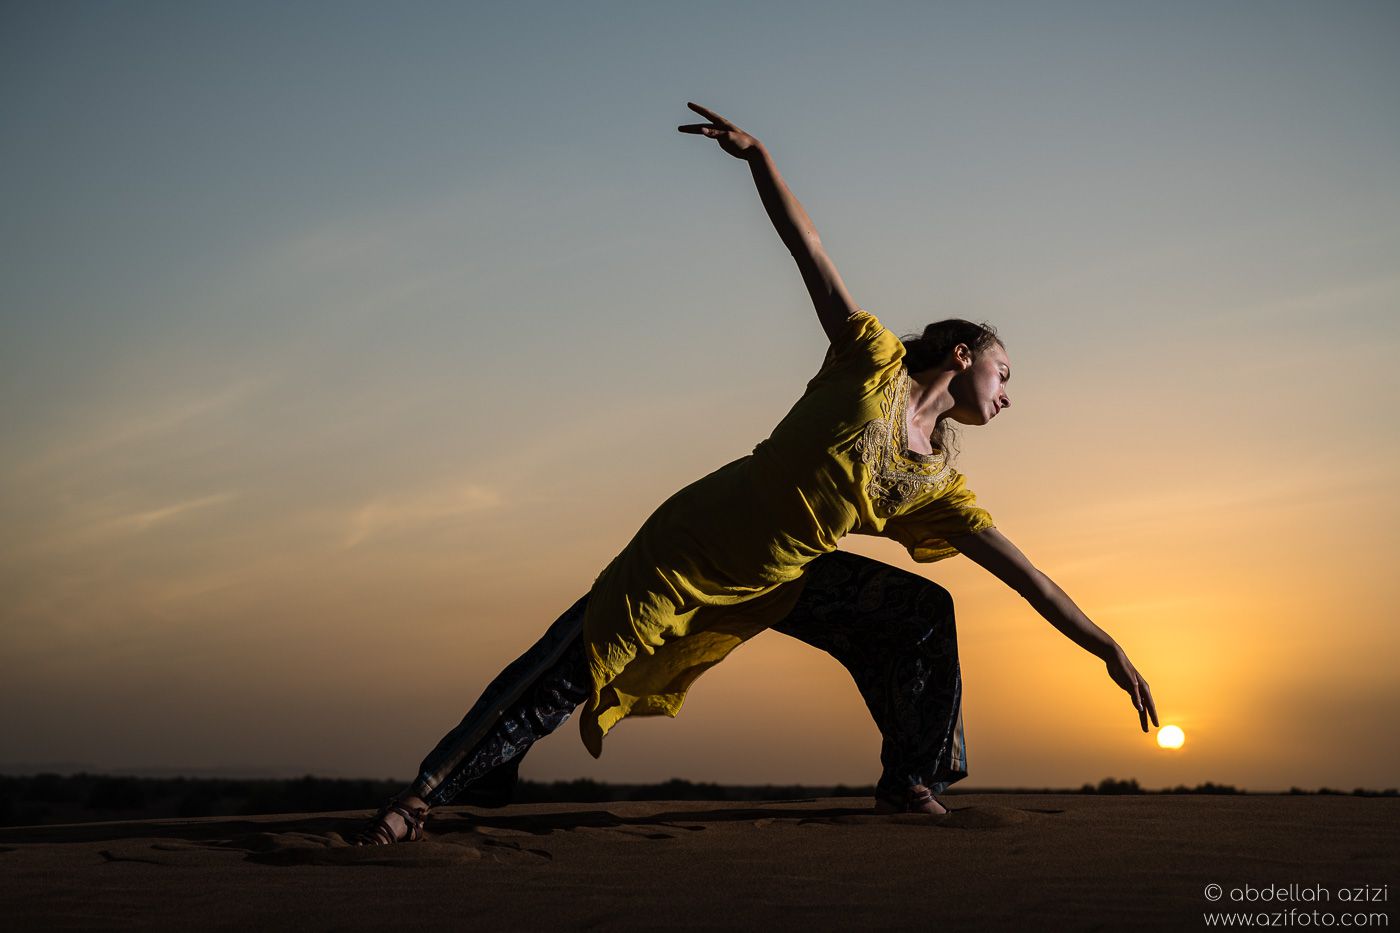 Desert dancer - sunset